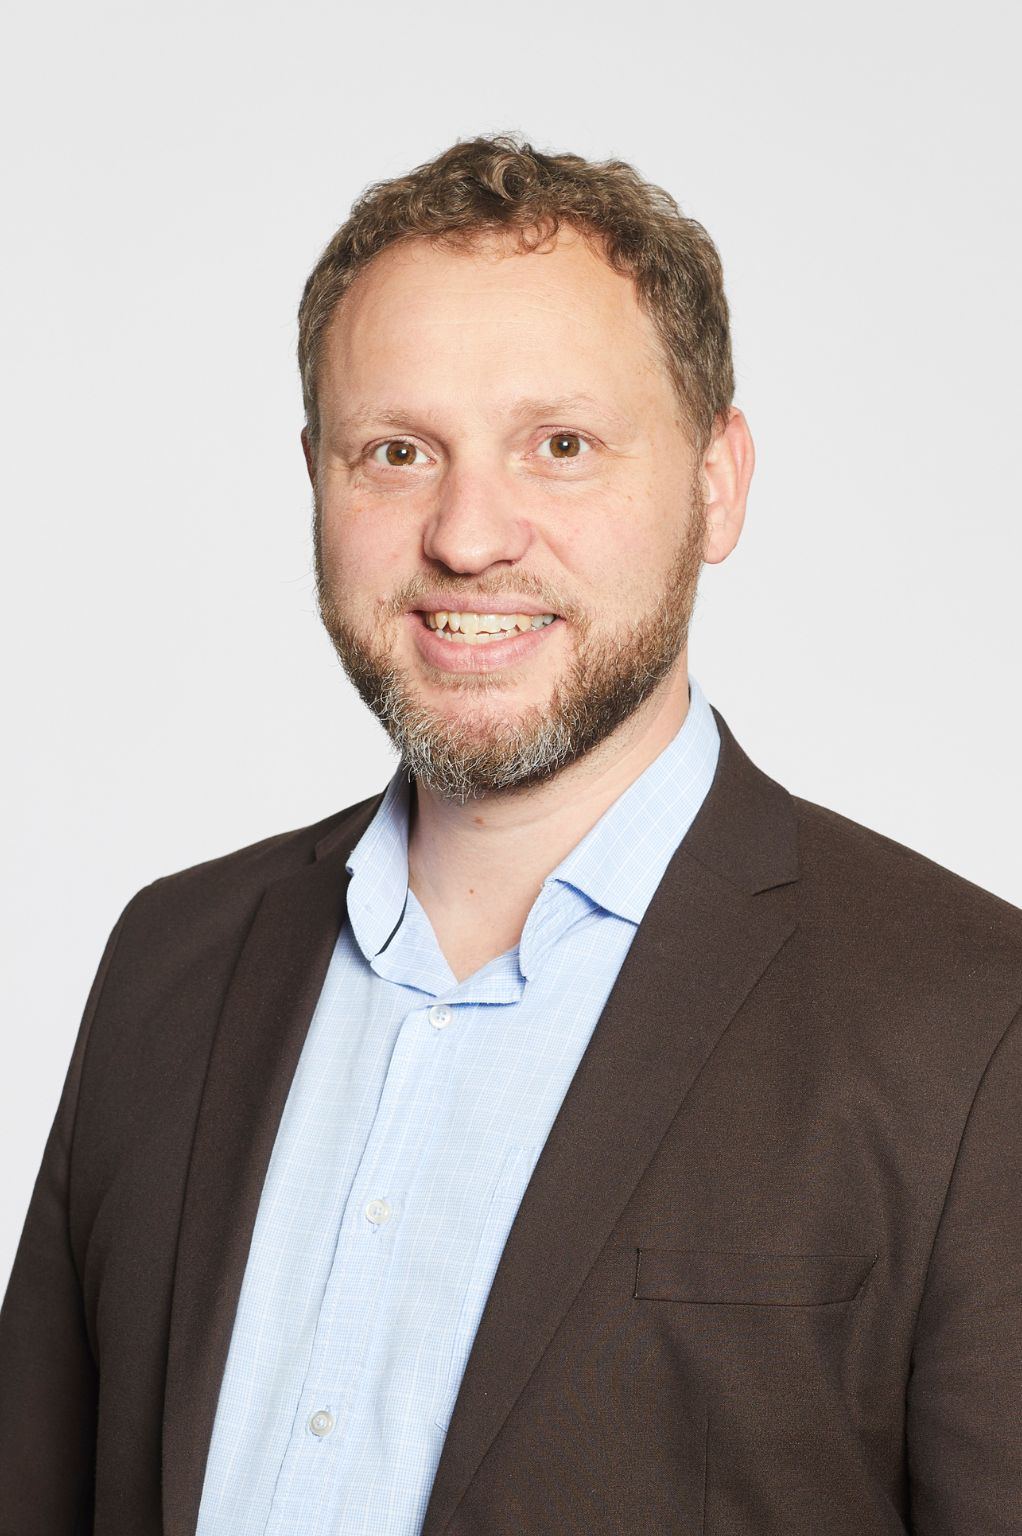 Morten Lauridsen Member Relations Manager Danish eksport / Dansk eksport 